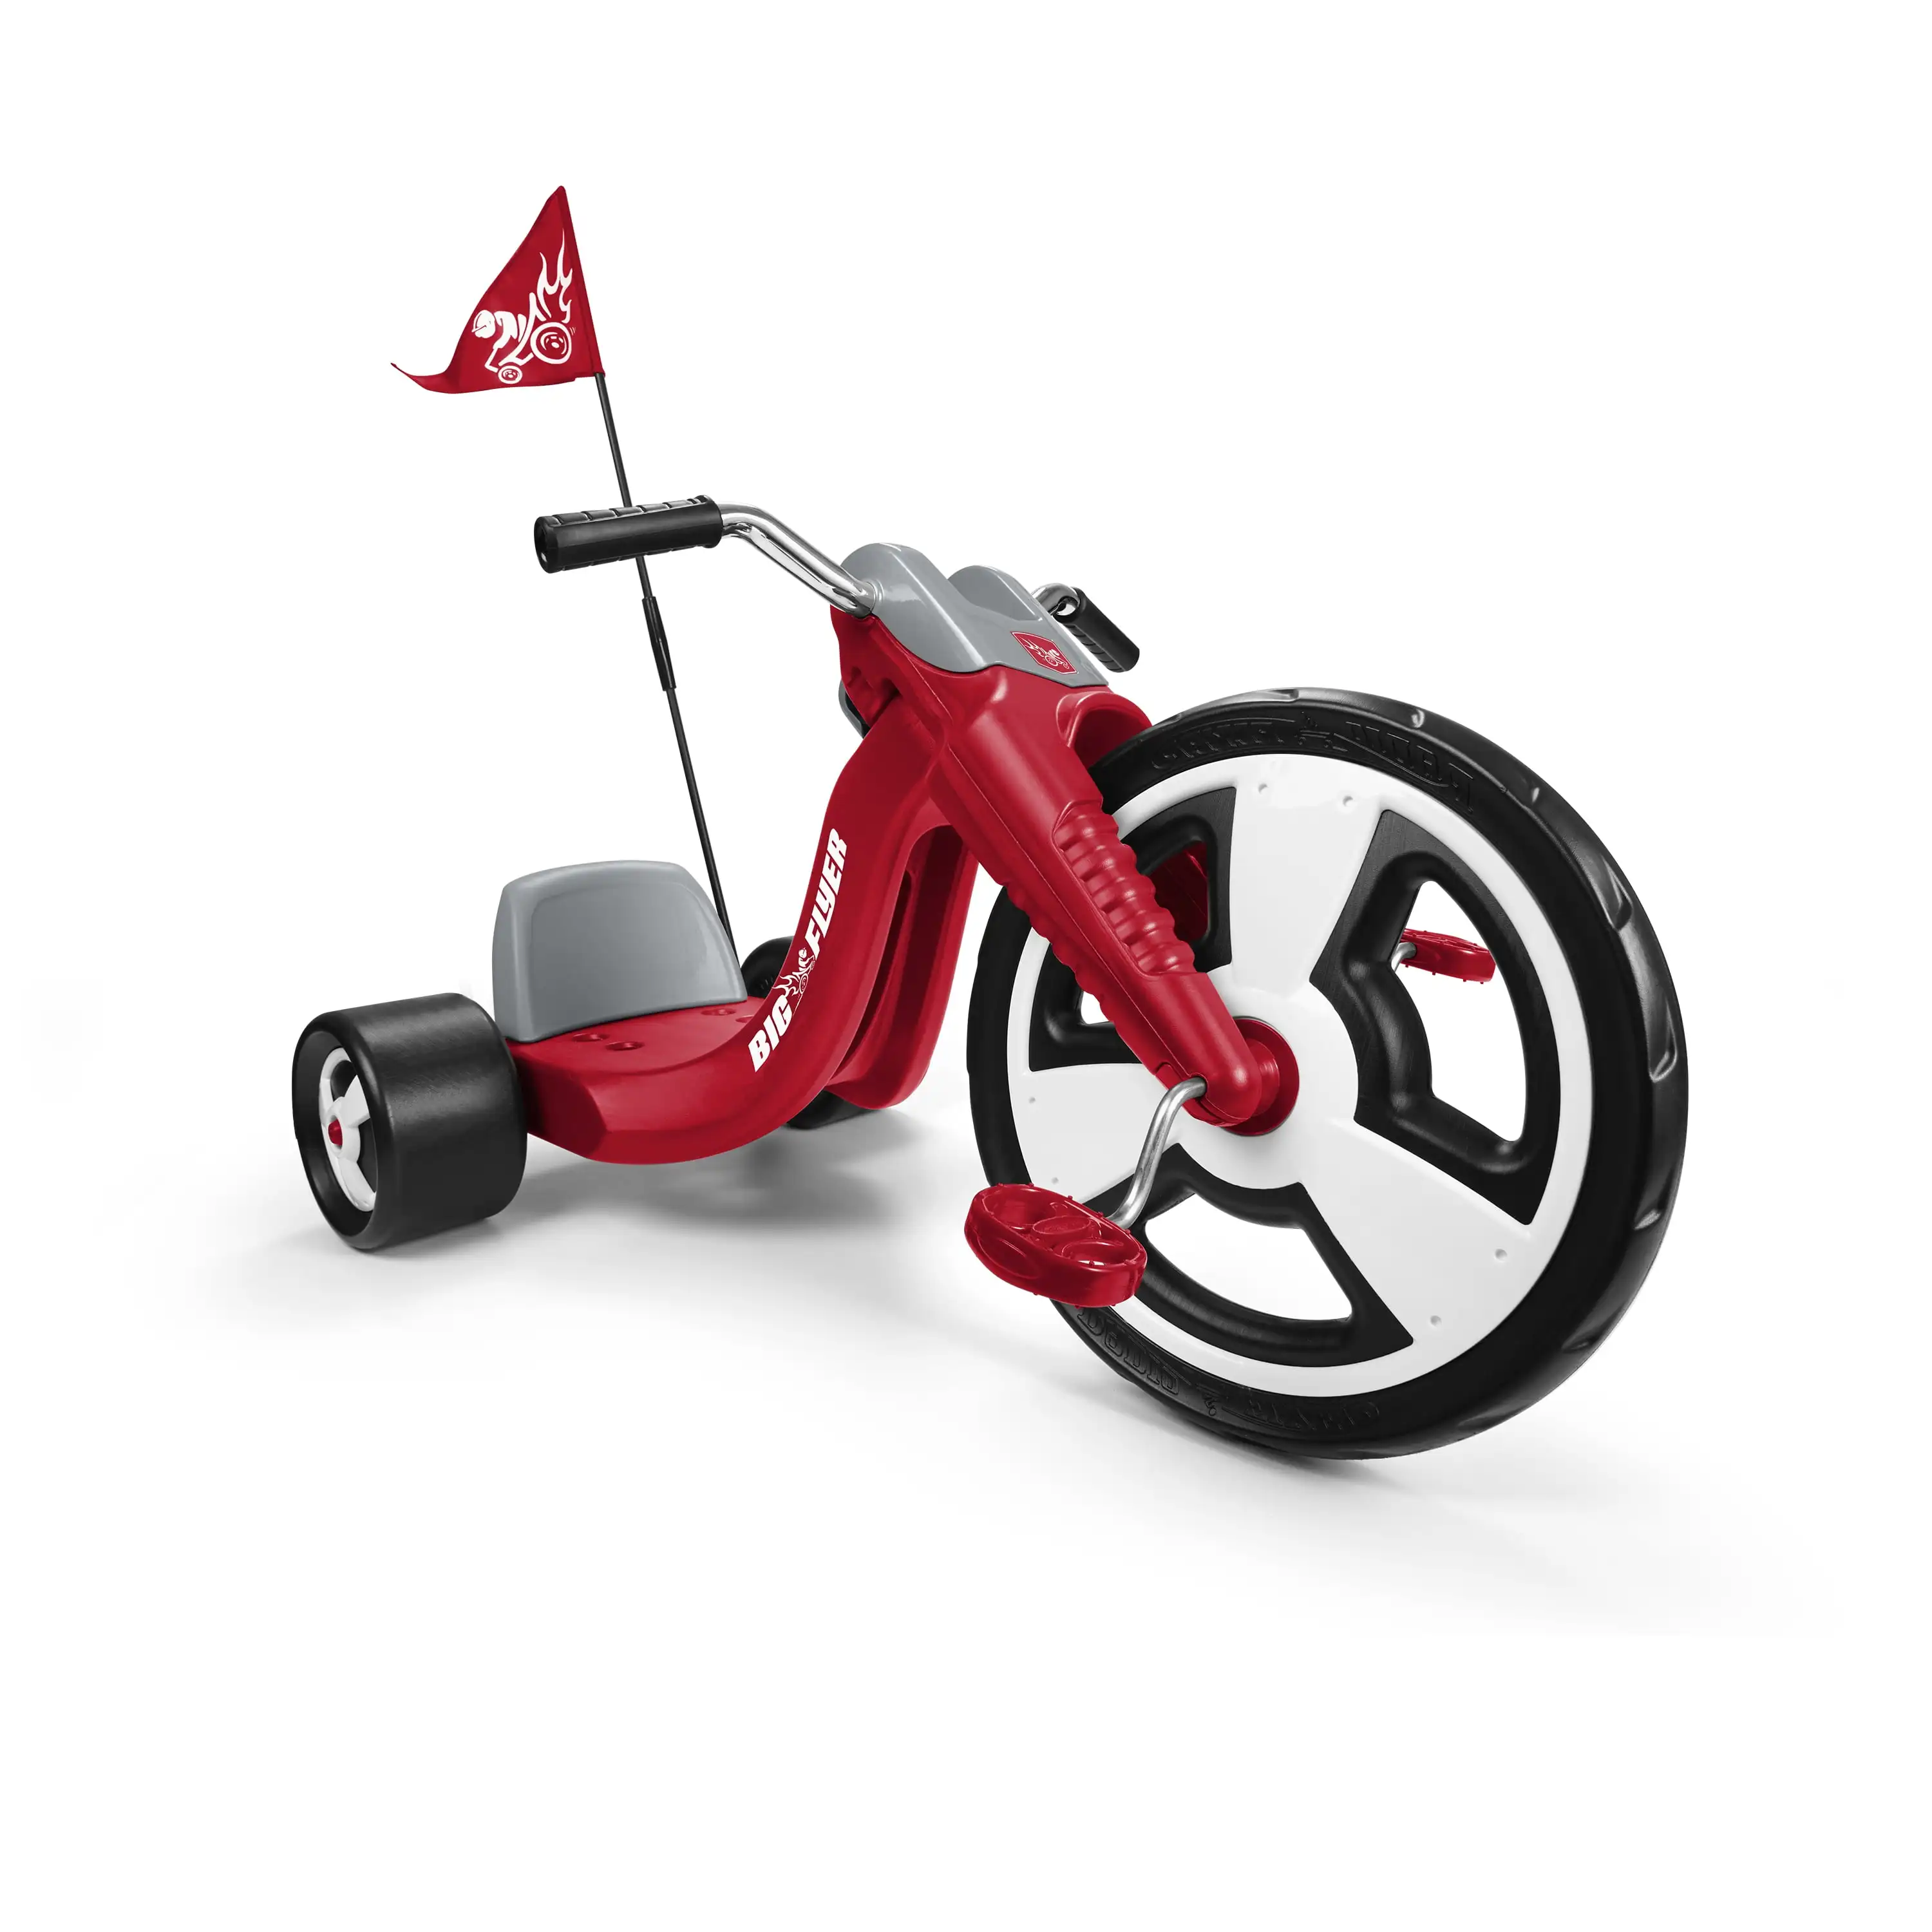 

Большой спортивный трехколесный велосипед RD Flyer, 16-дюймовое переднее колесо, красный